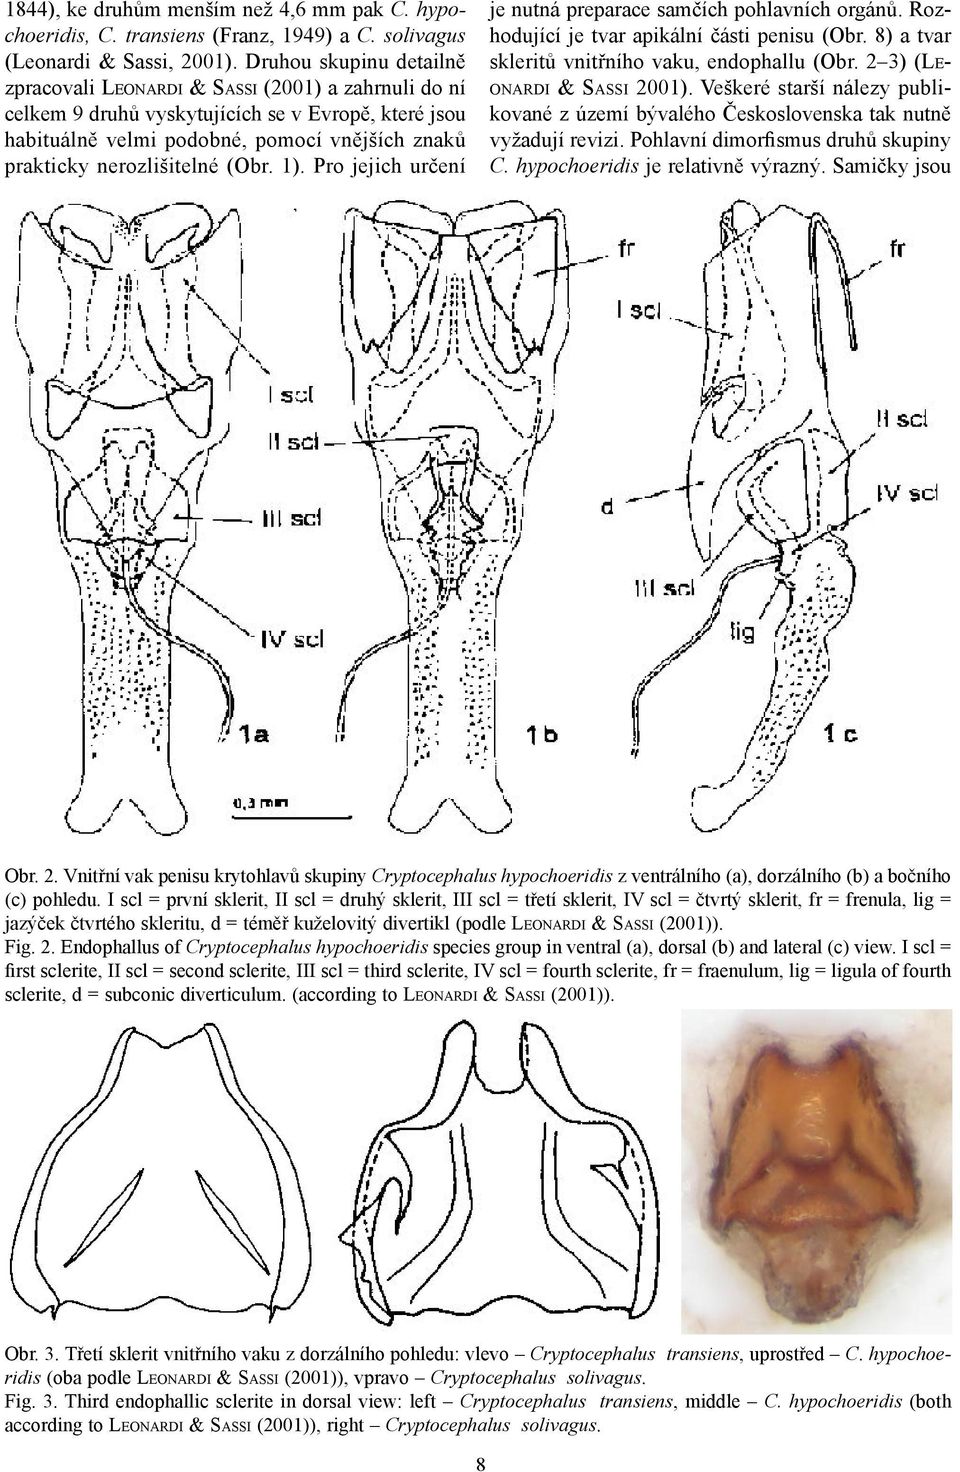 nerozlišitelné (Obr. 1). Pro jejich určení je nutná preparace samčích pohlavních orgánů. Rozhodující je tvar apikální části penisu (Obr. 8) a tvar skleritů vnitřního vaku, endophallu (Obr.